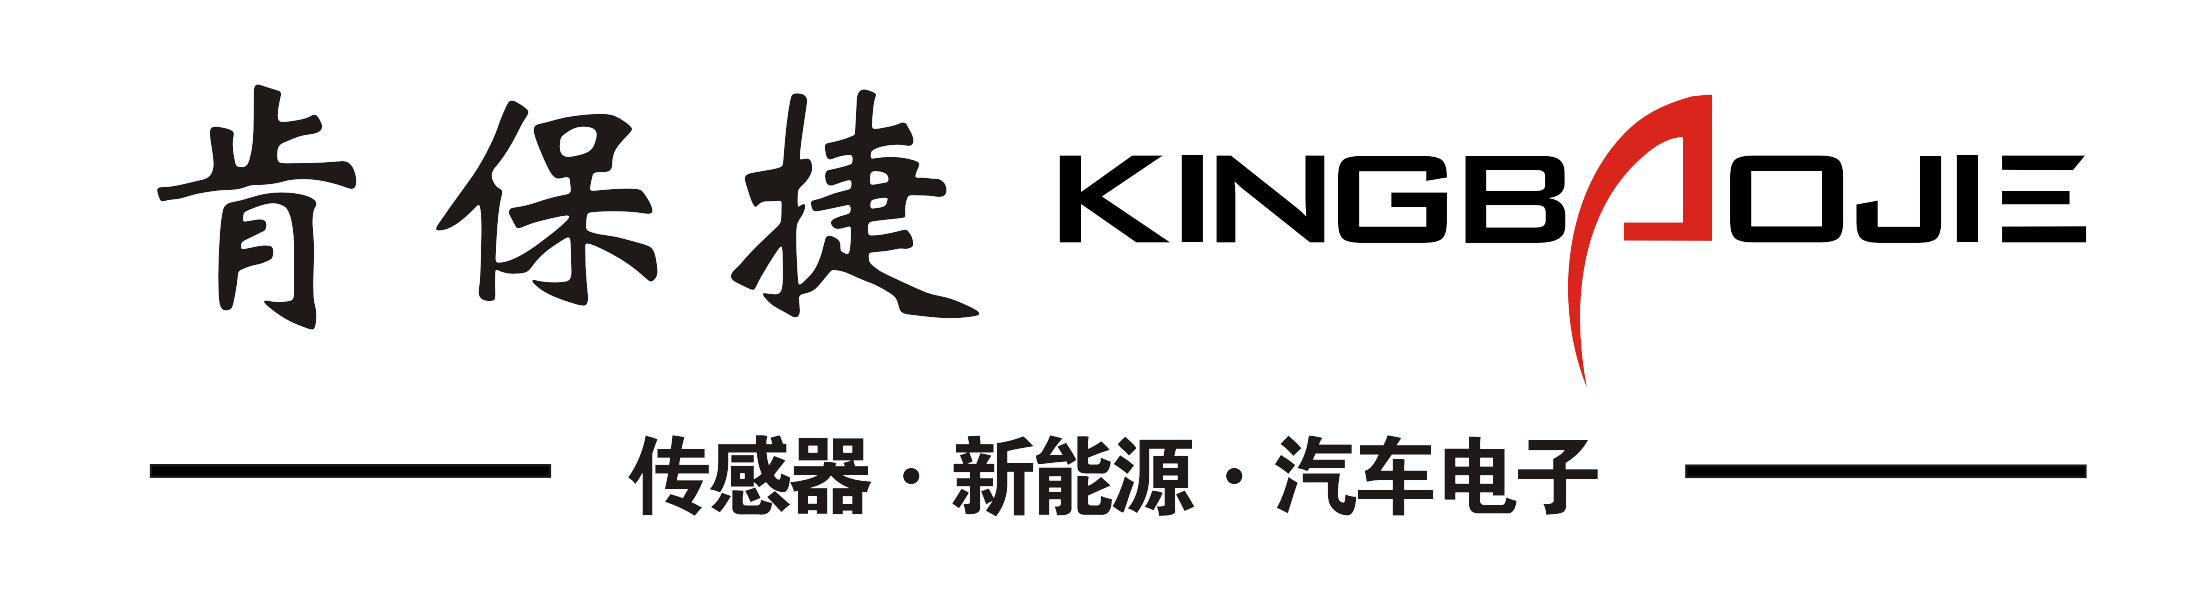 肯保捷股份logo